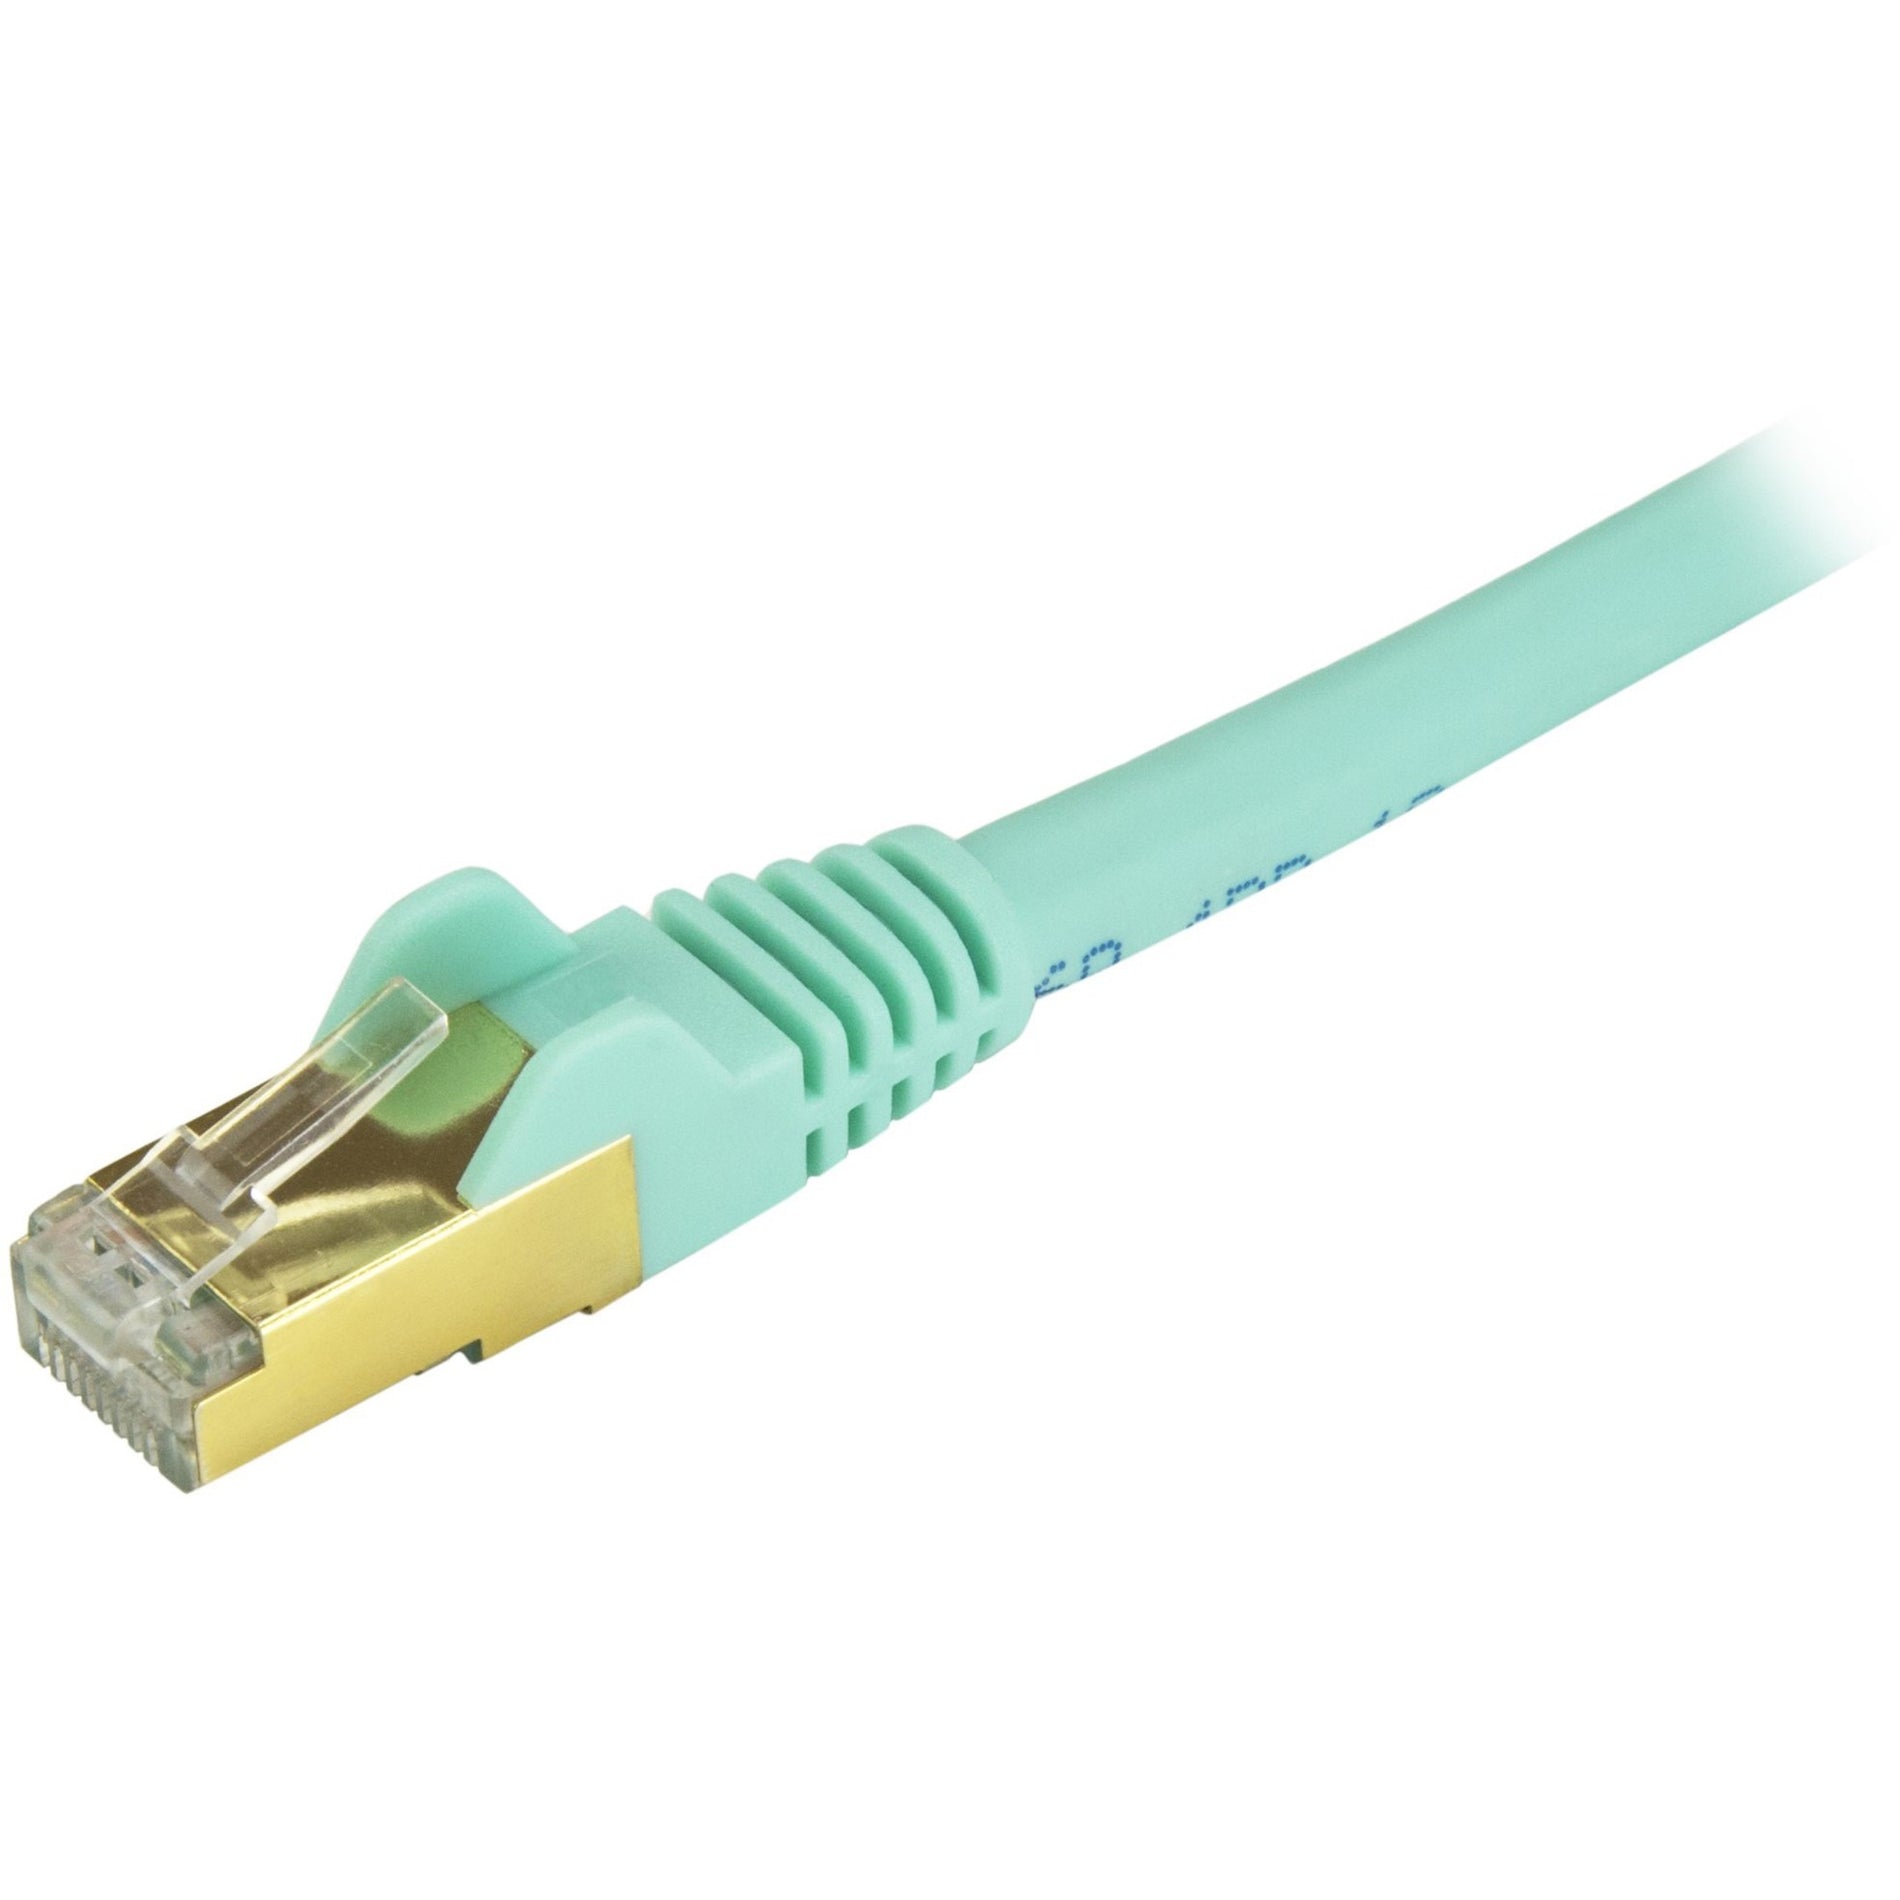 StarTech.com C6ASPAT30AQ Cat6a Ethernet Patch Cable - Shielded (STP) - 30 ft., Aqua, Long Ethernet Cord